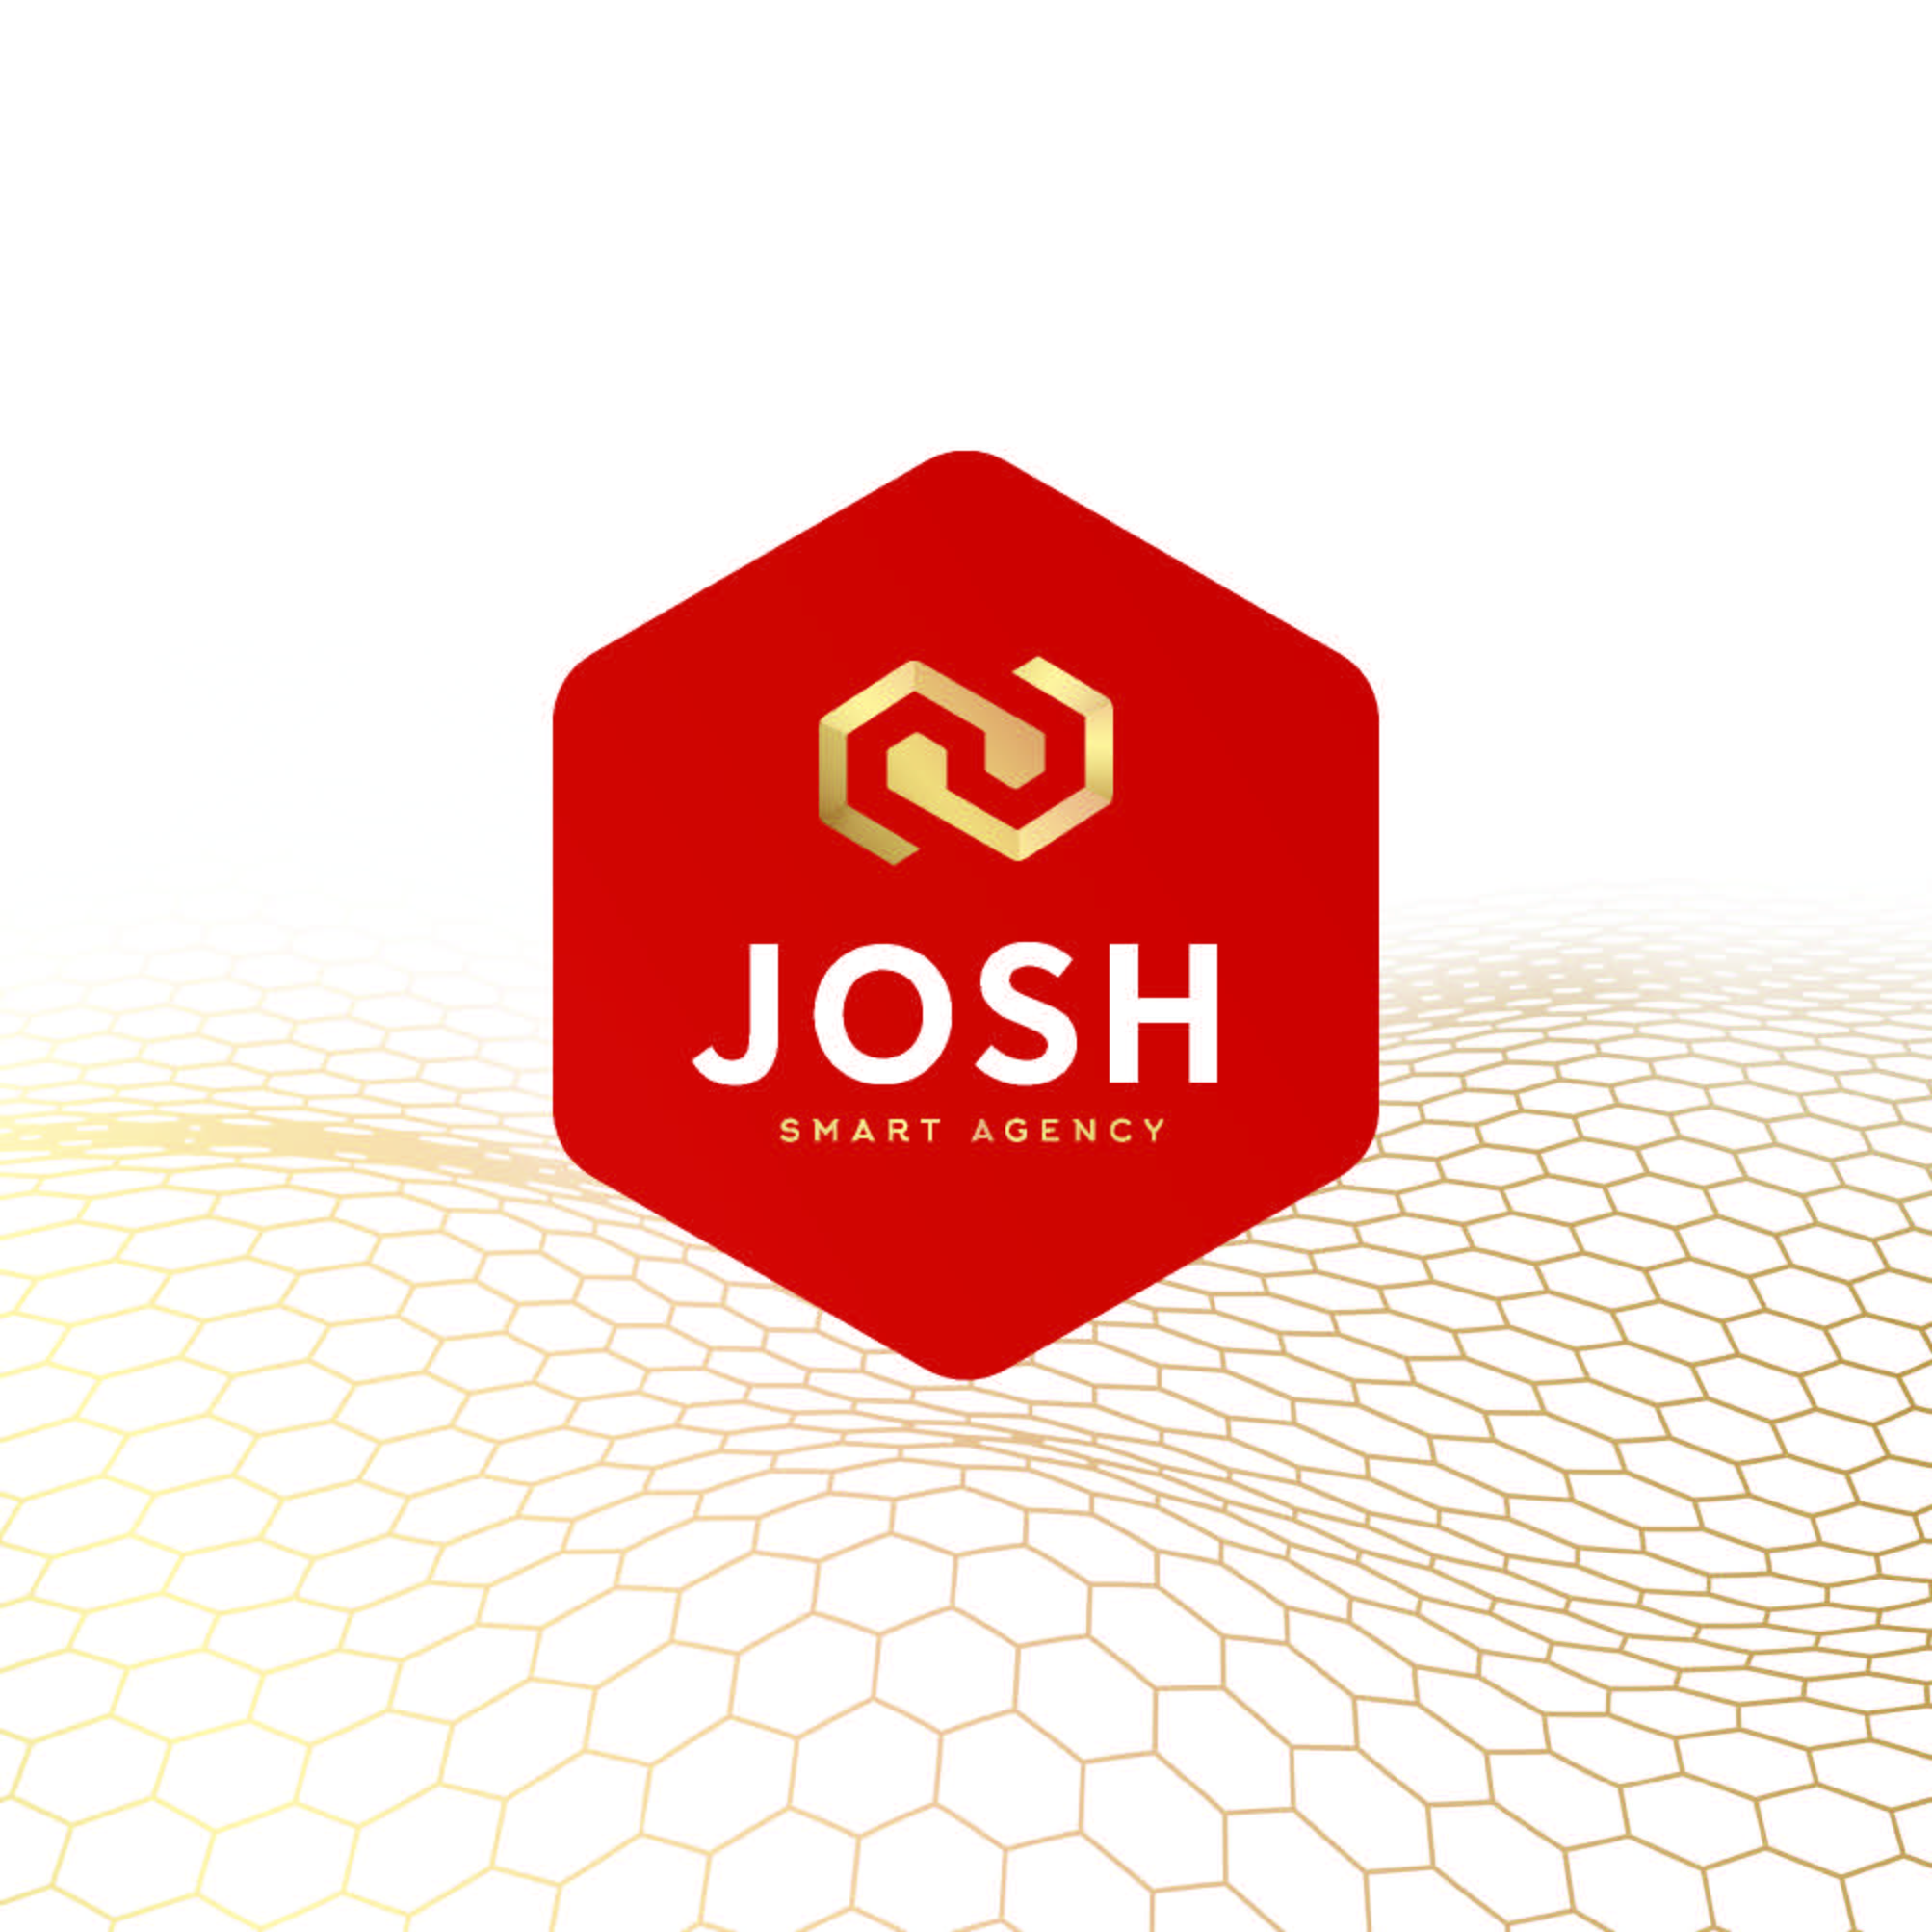 Josh Digital : Une nouvelle identité visuelle pour une nouvelle ère !